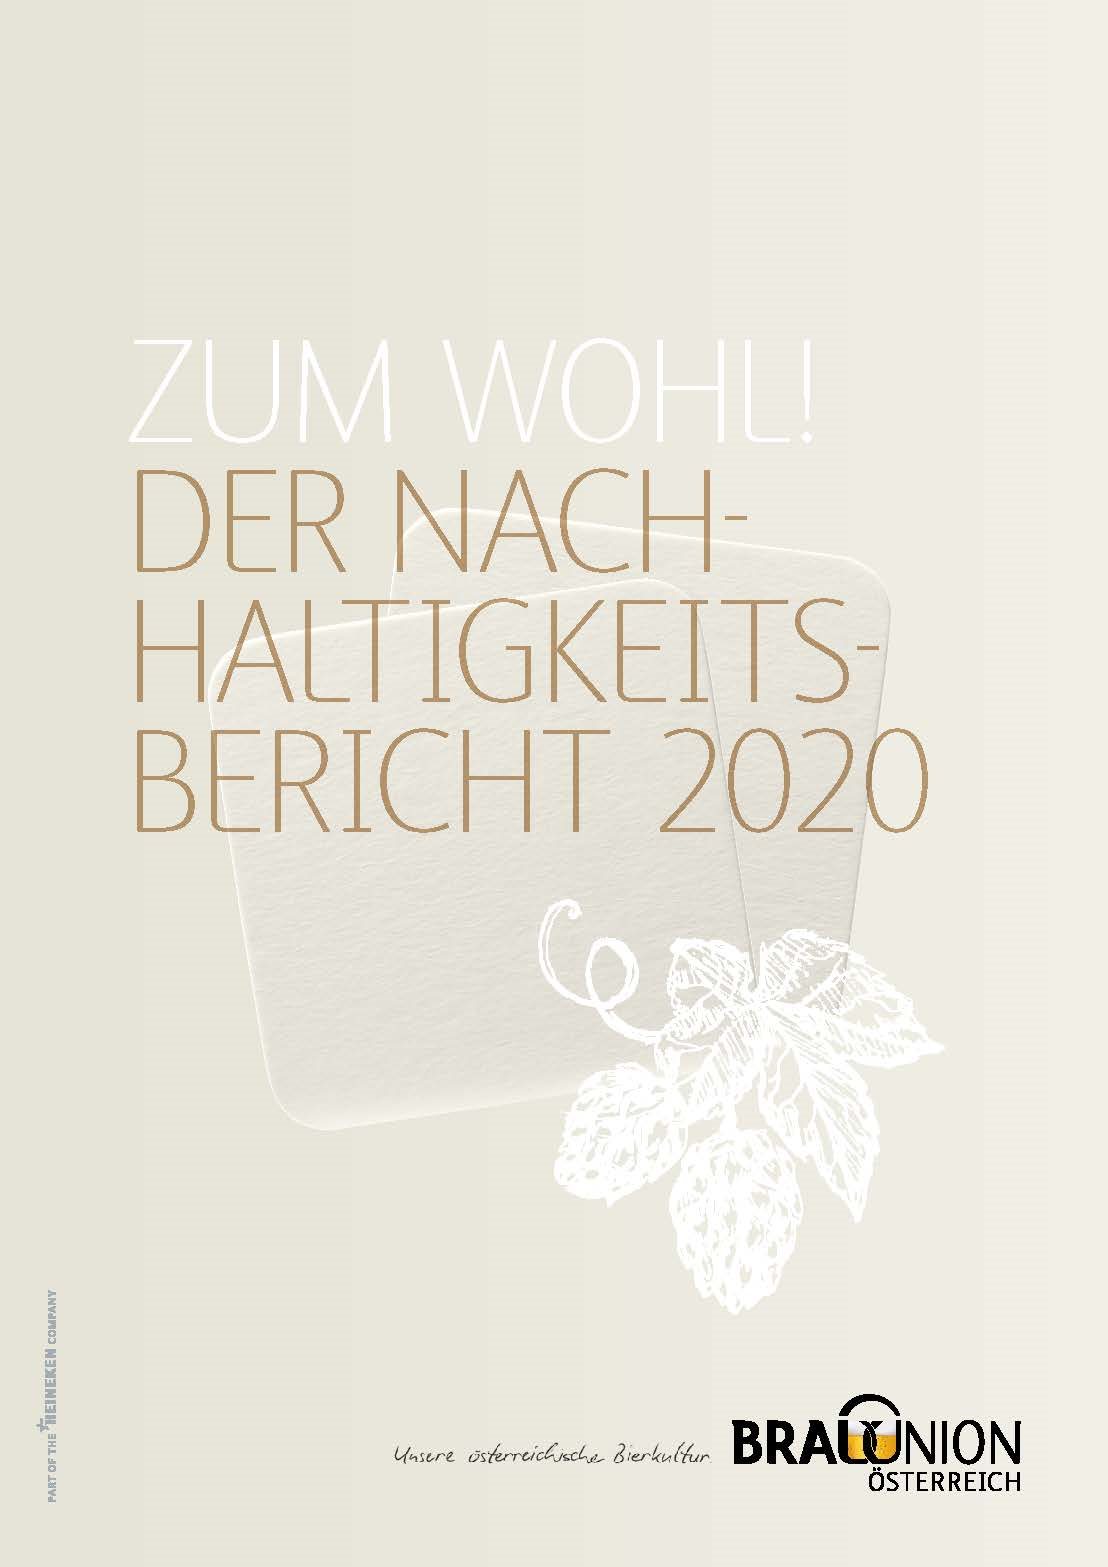 Der aktuelle Nachhaltigkeitsbericht der Brau Union Österreich zeichnet eine positive Jahresbilanz auf dem Weg zu einer CO2-neutralen Bierproduktion.